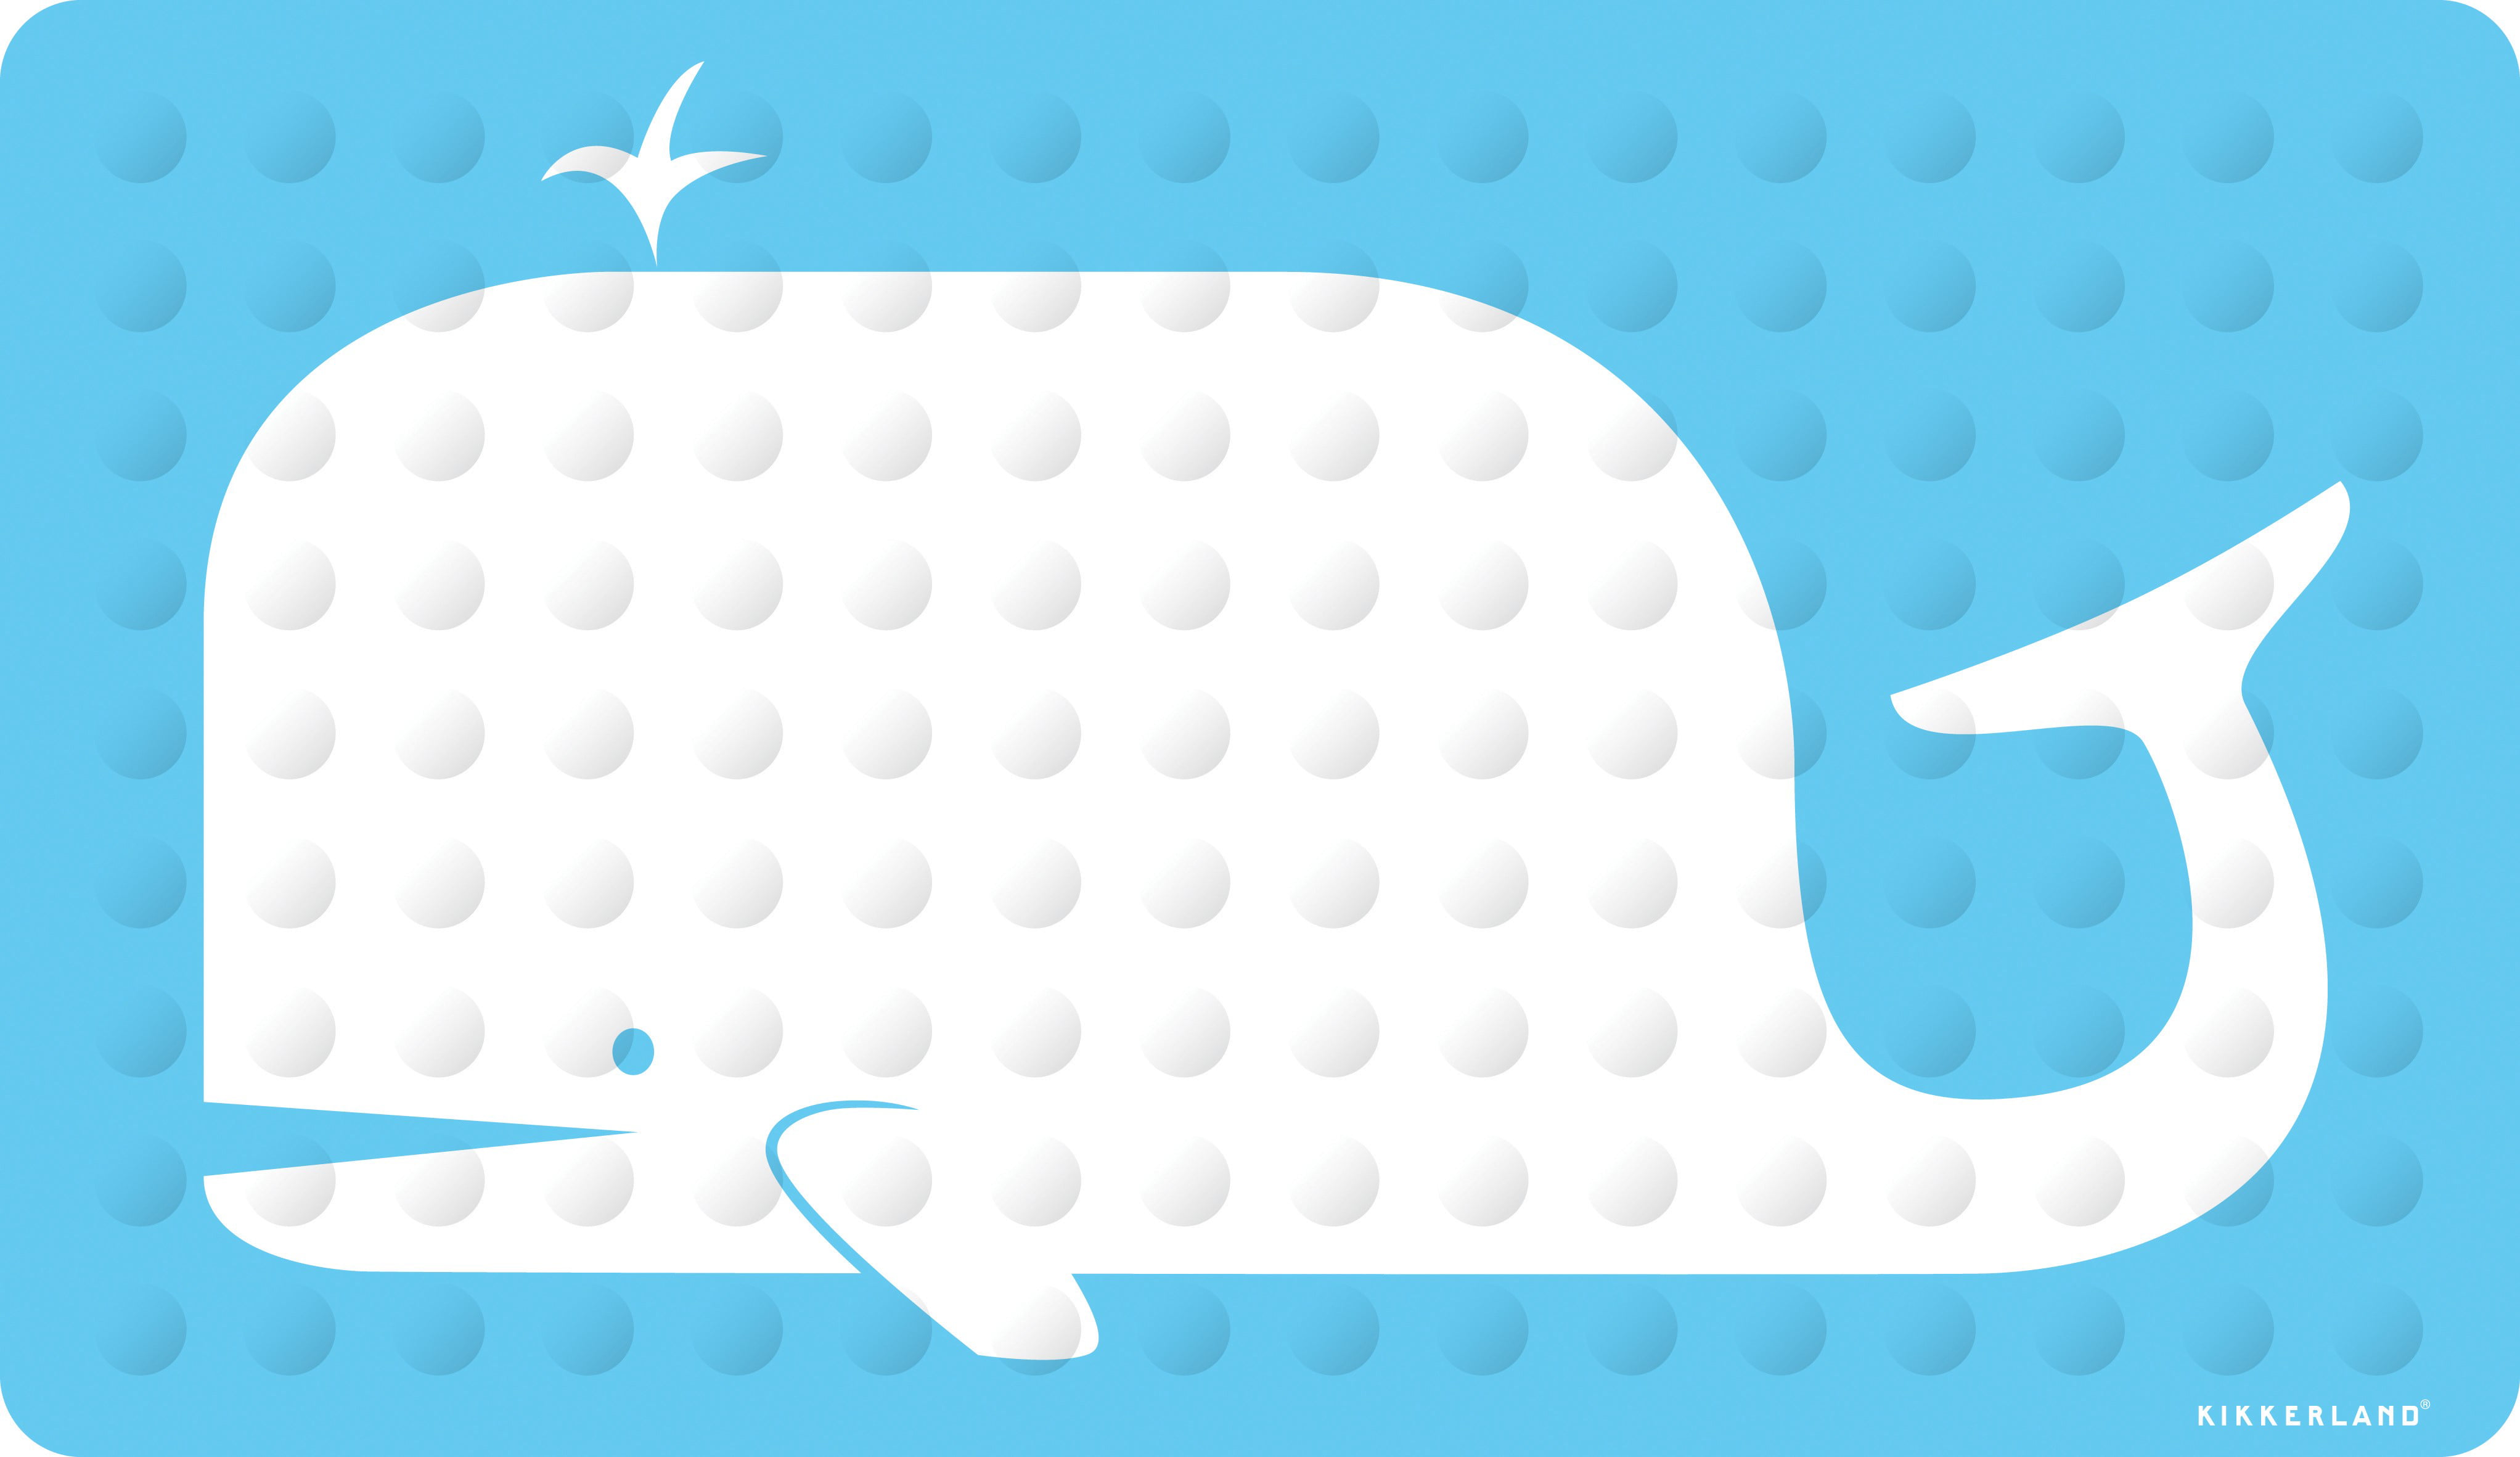 whale bath mat